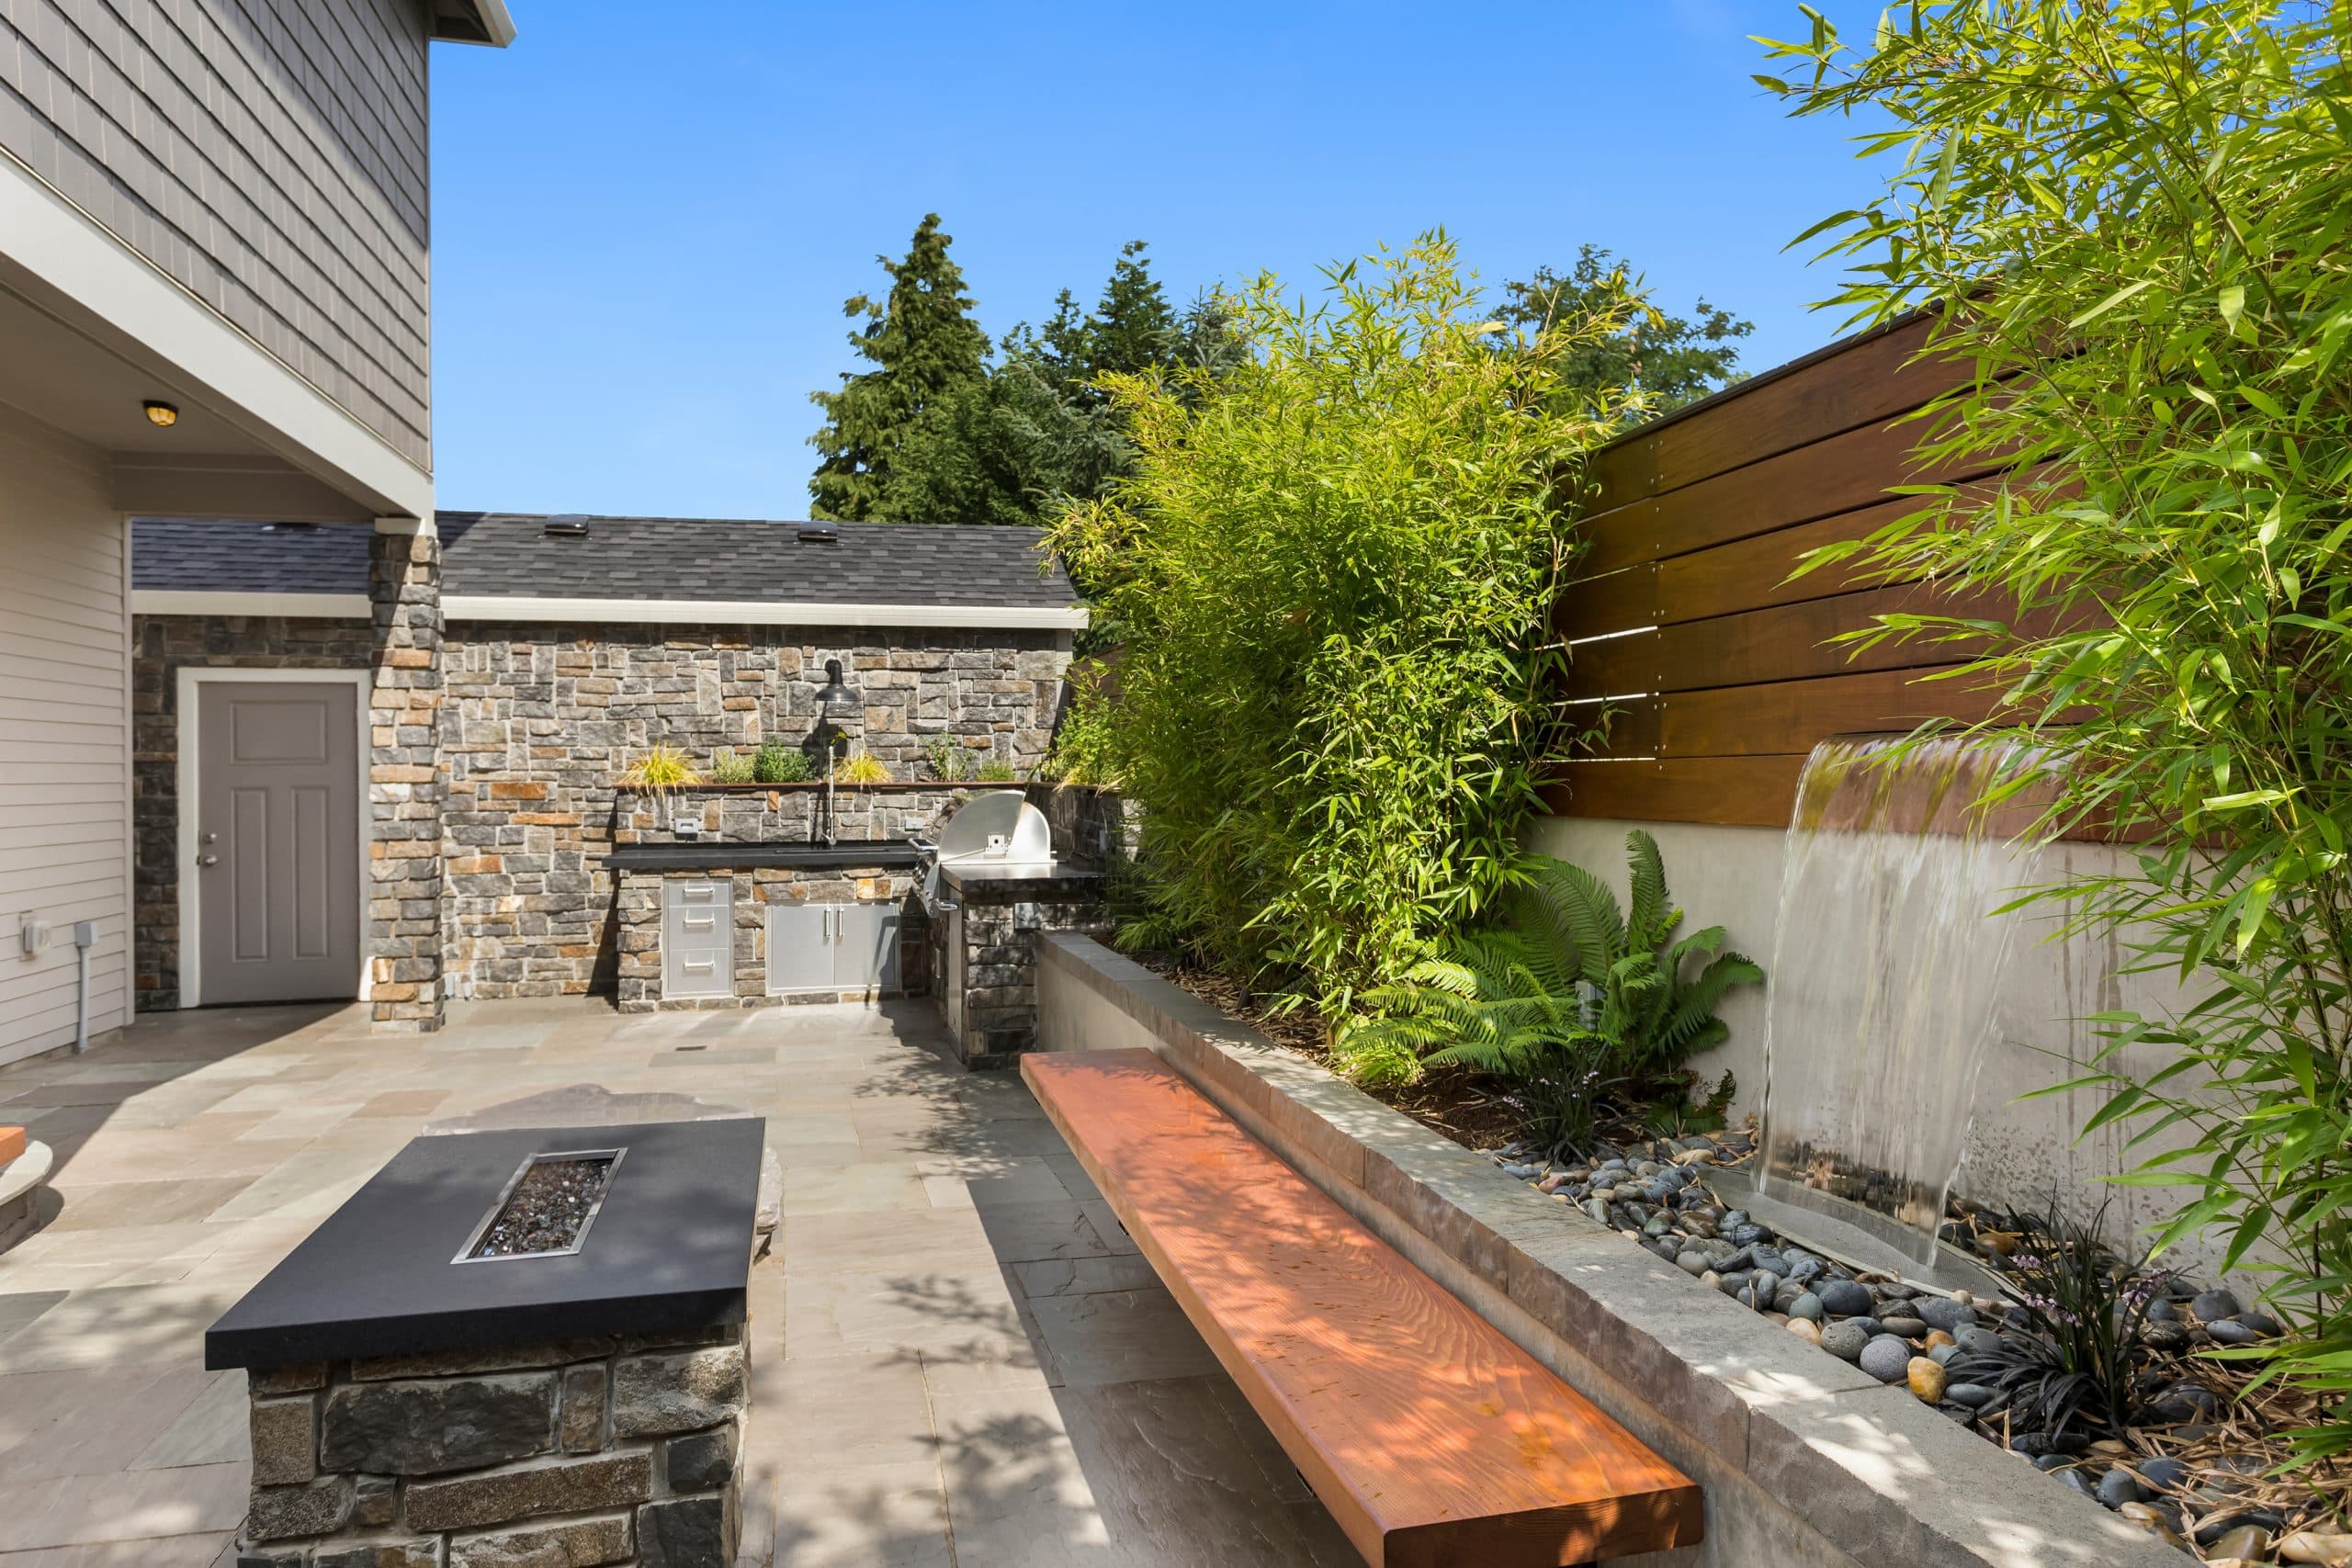 Terrasse mit praktischer Outdoorküche, gemütlicher Feuerstelle und einladendem Wasserspiel.